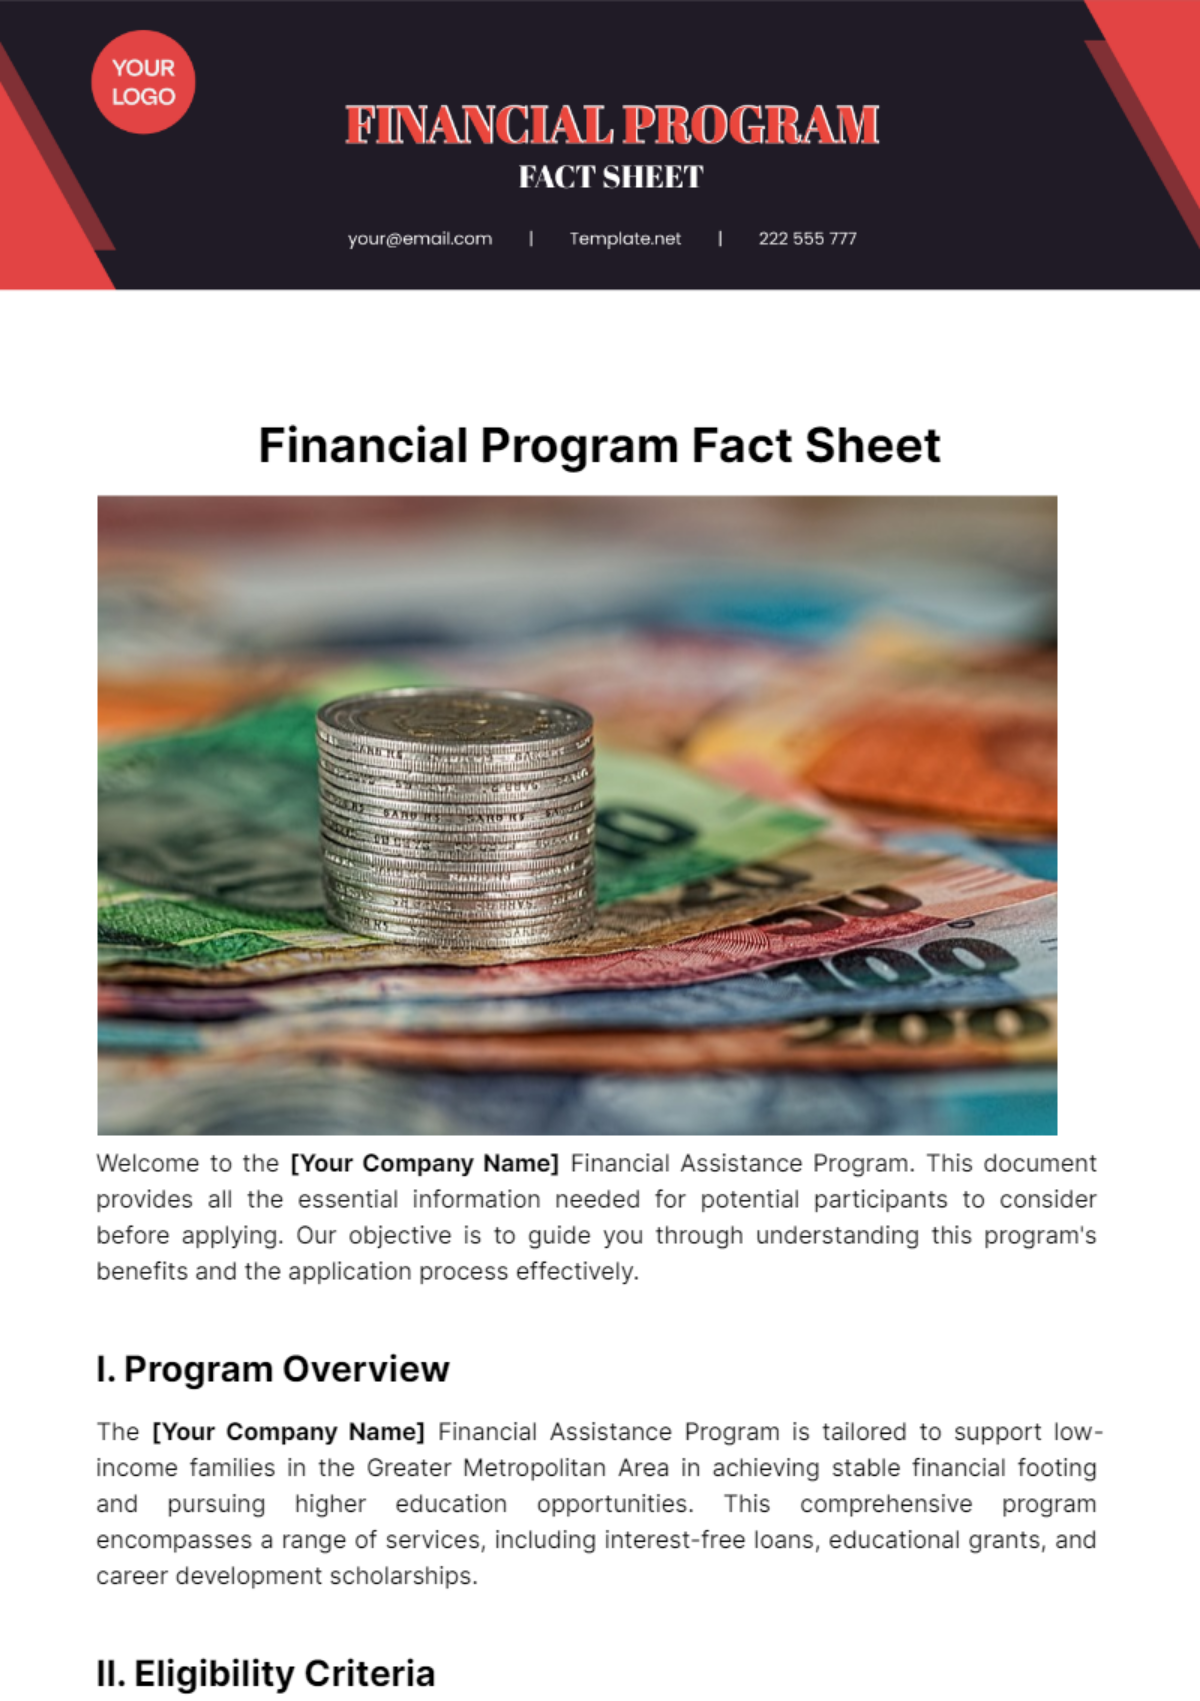 Financial Program Fact Sheet Template